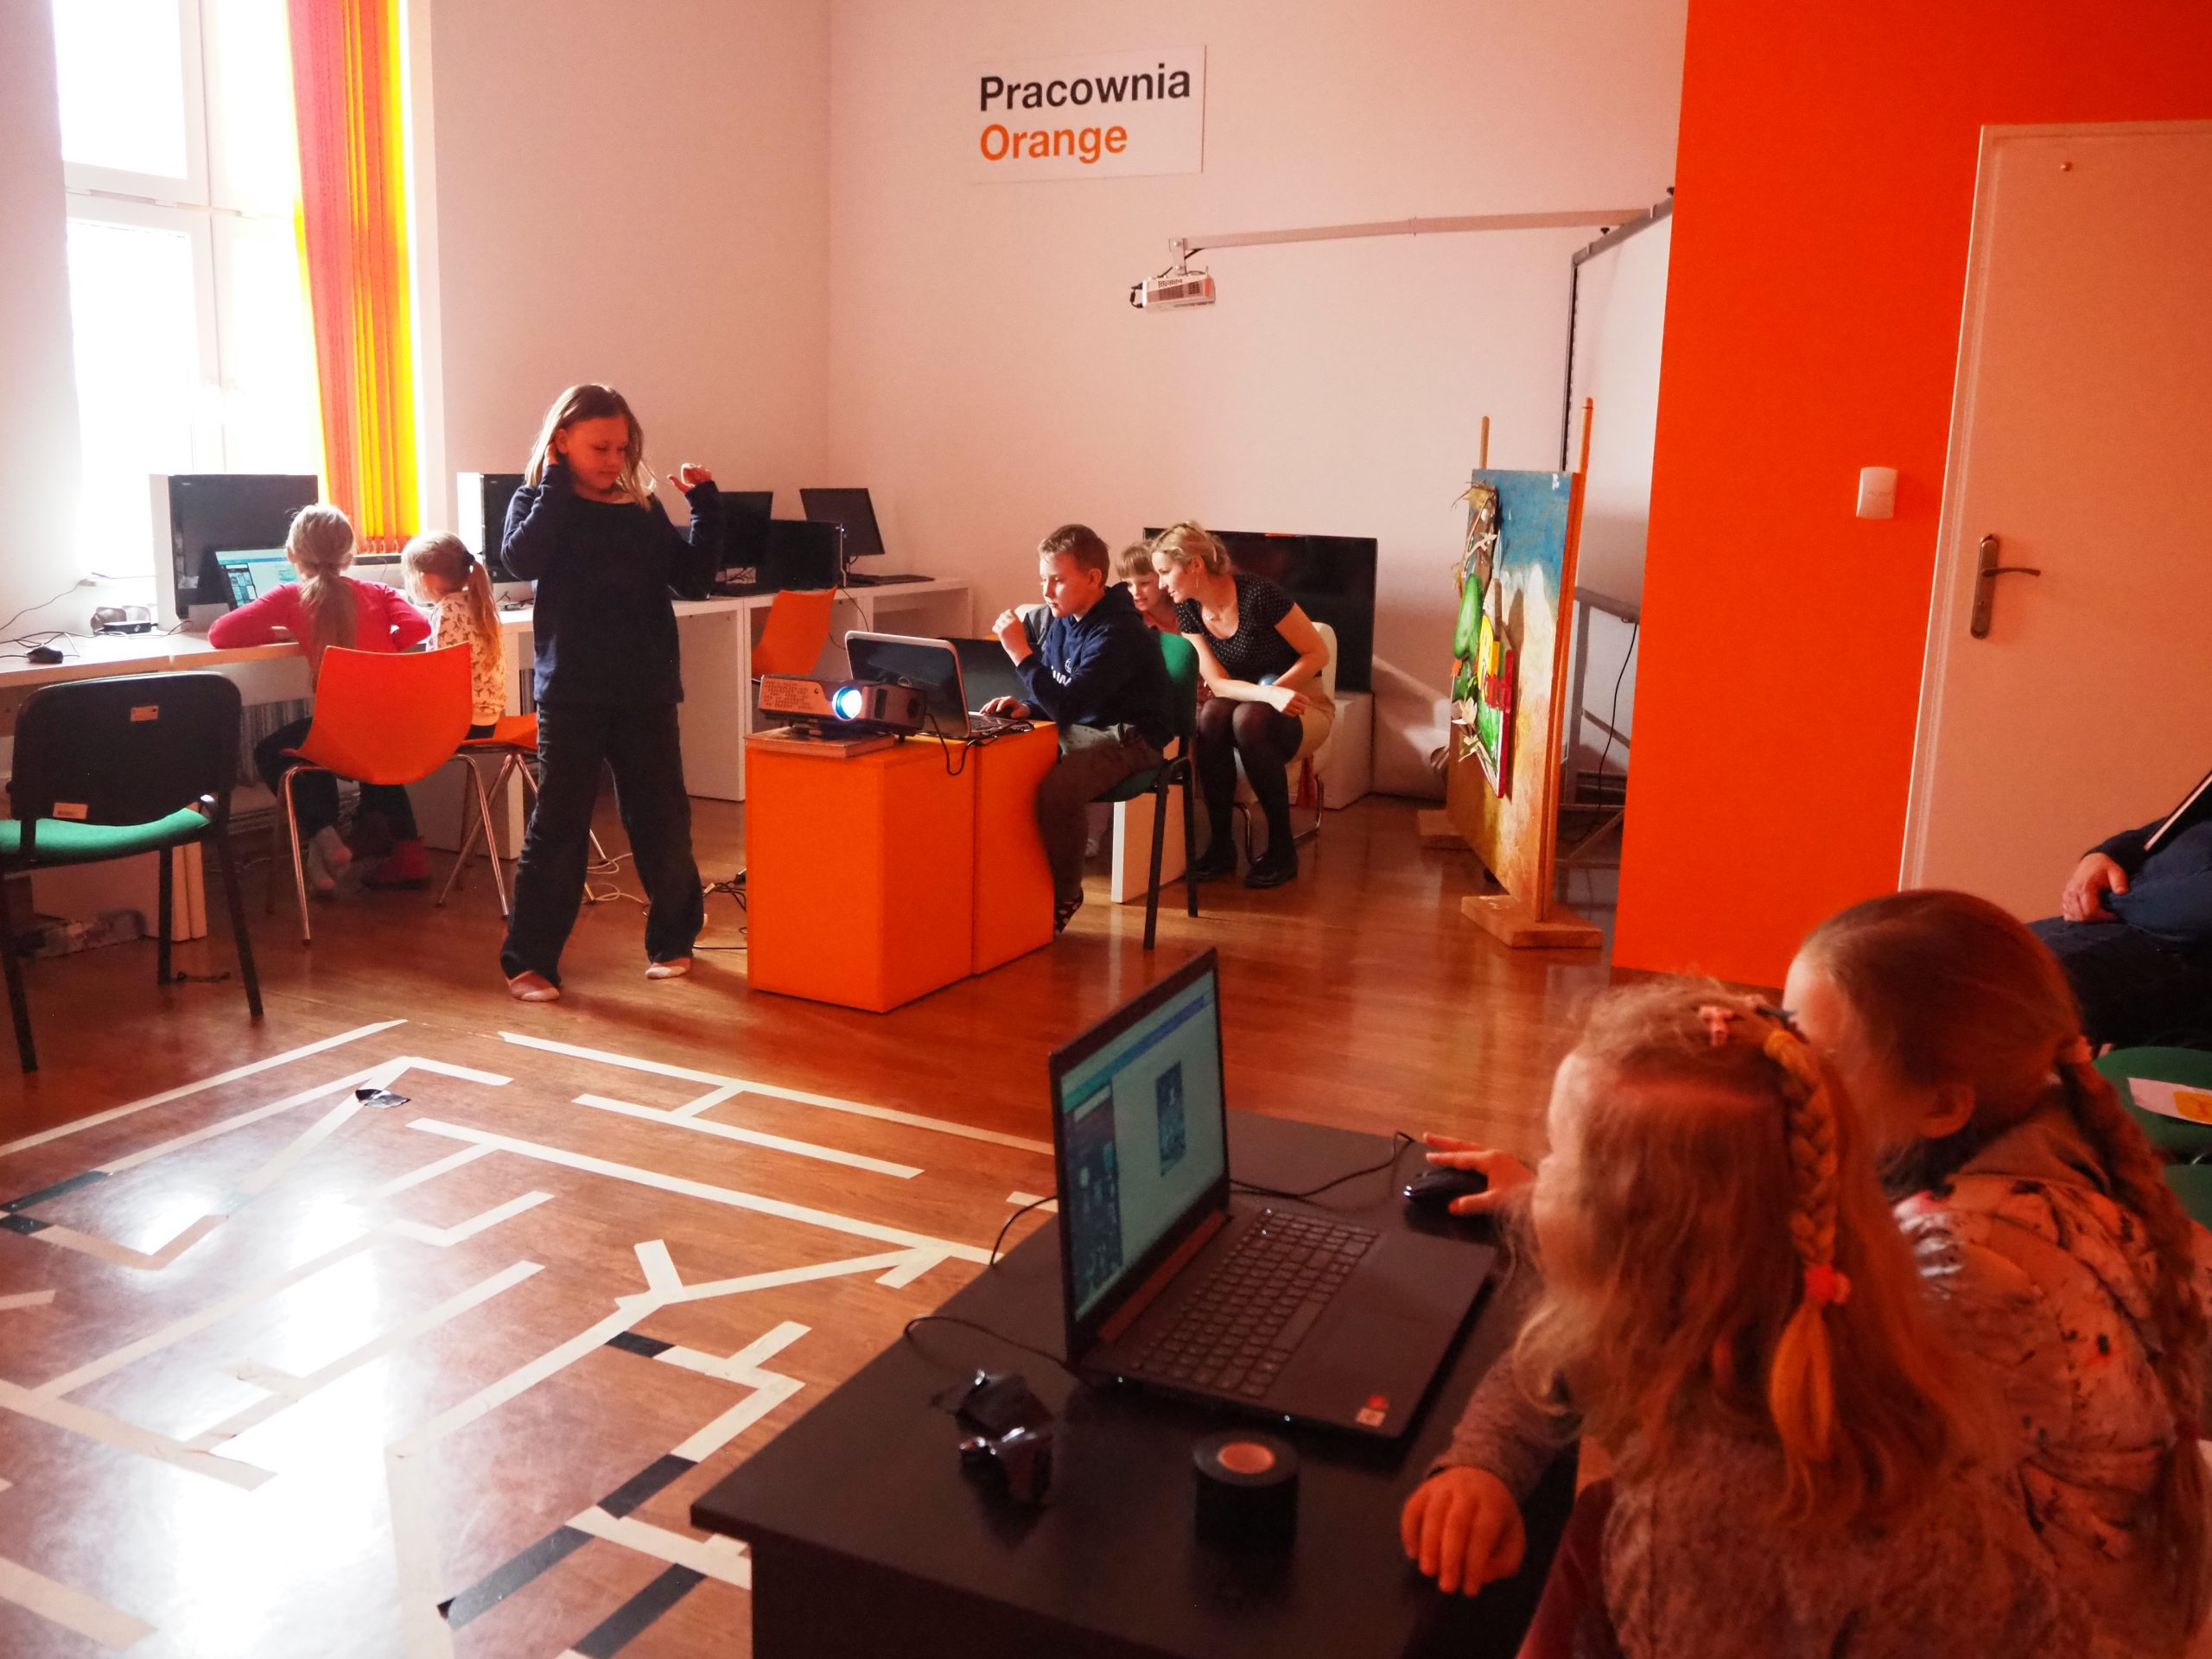 dzieci w pracowni orange siedzą przy laptopach a po środku pomieszczenia na podłodze z taśmy zrobiony jest labirynt